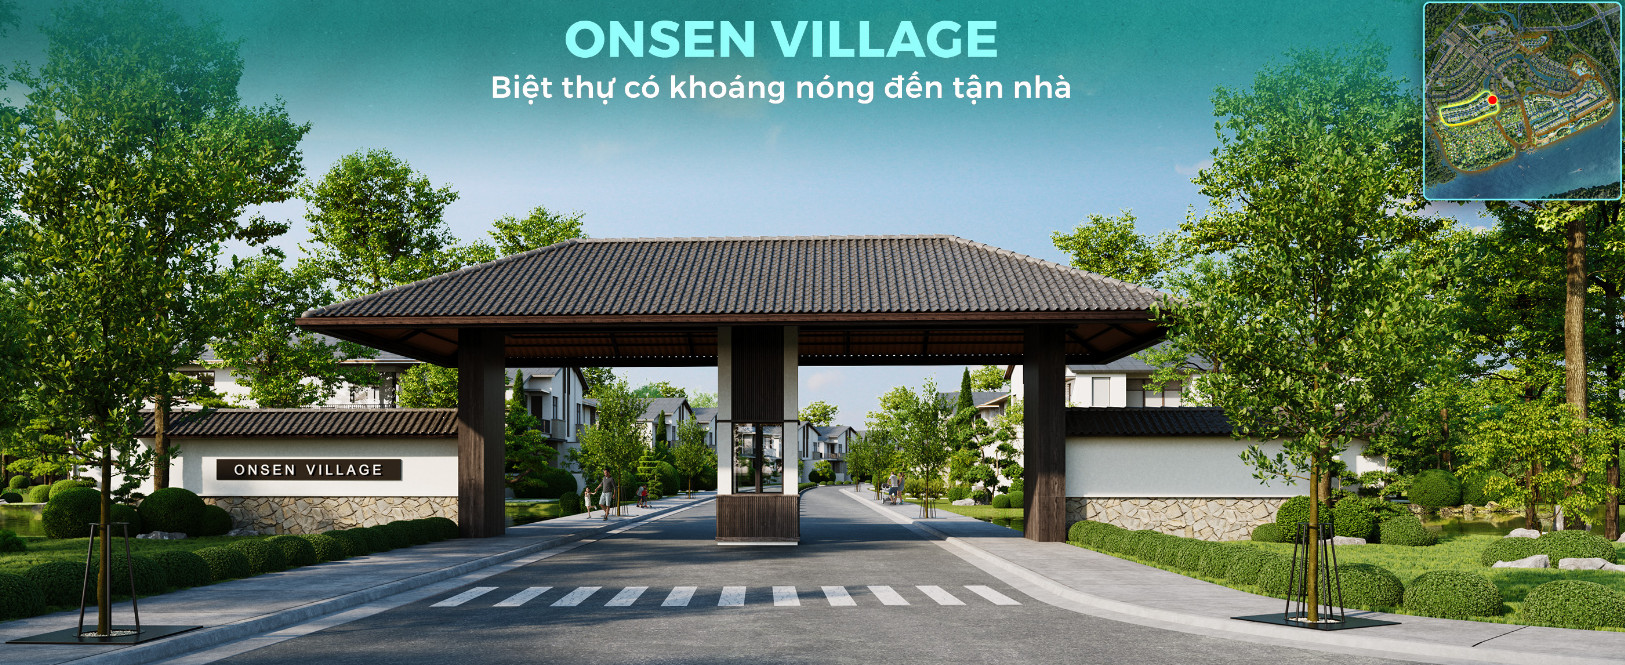 onsen village